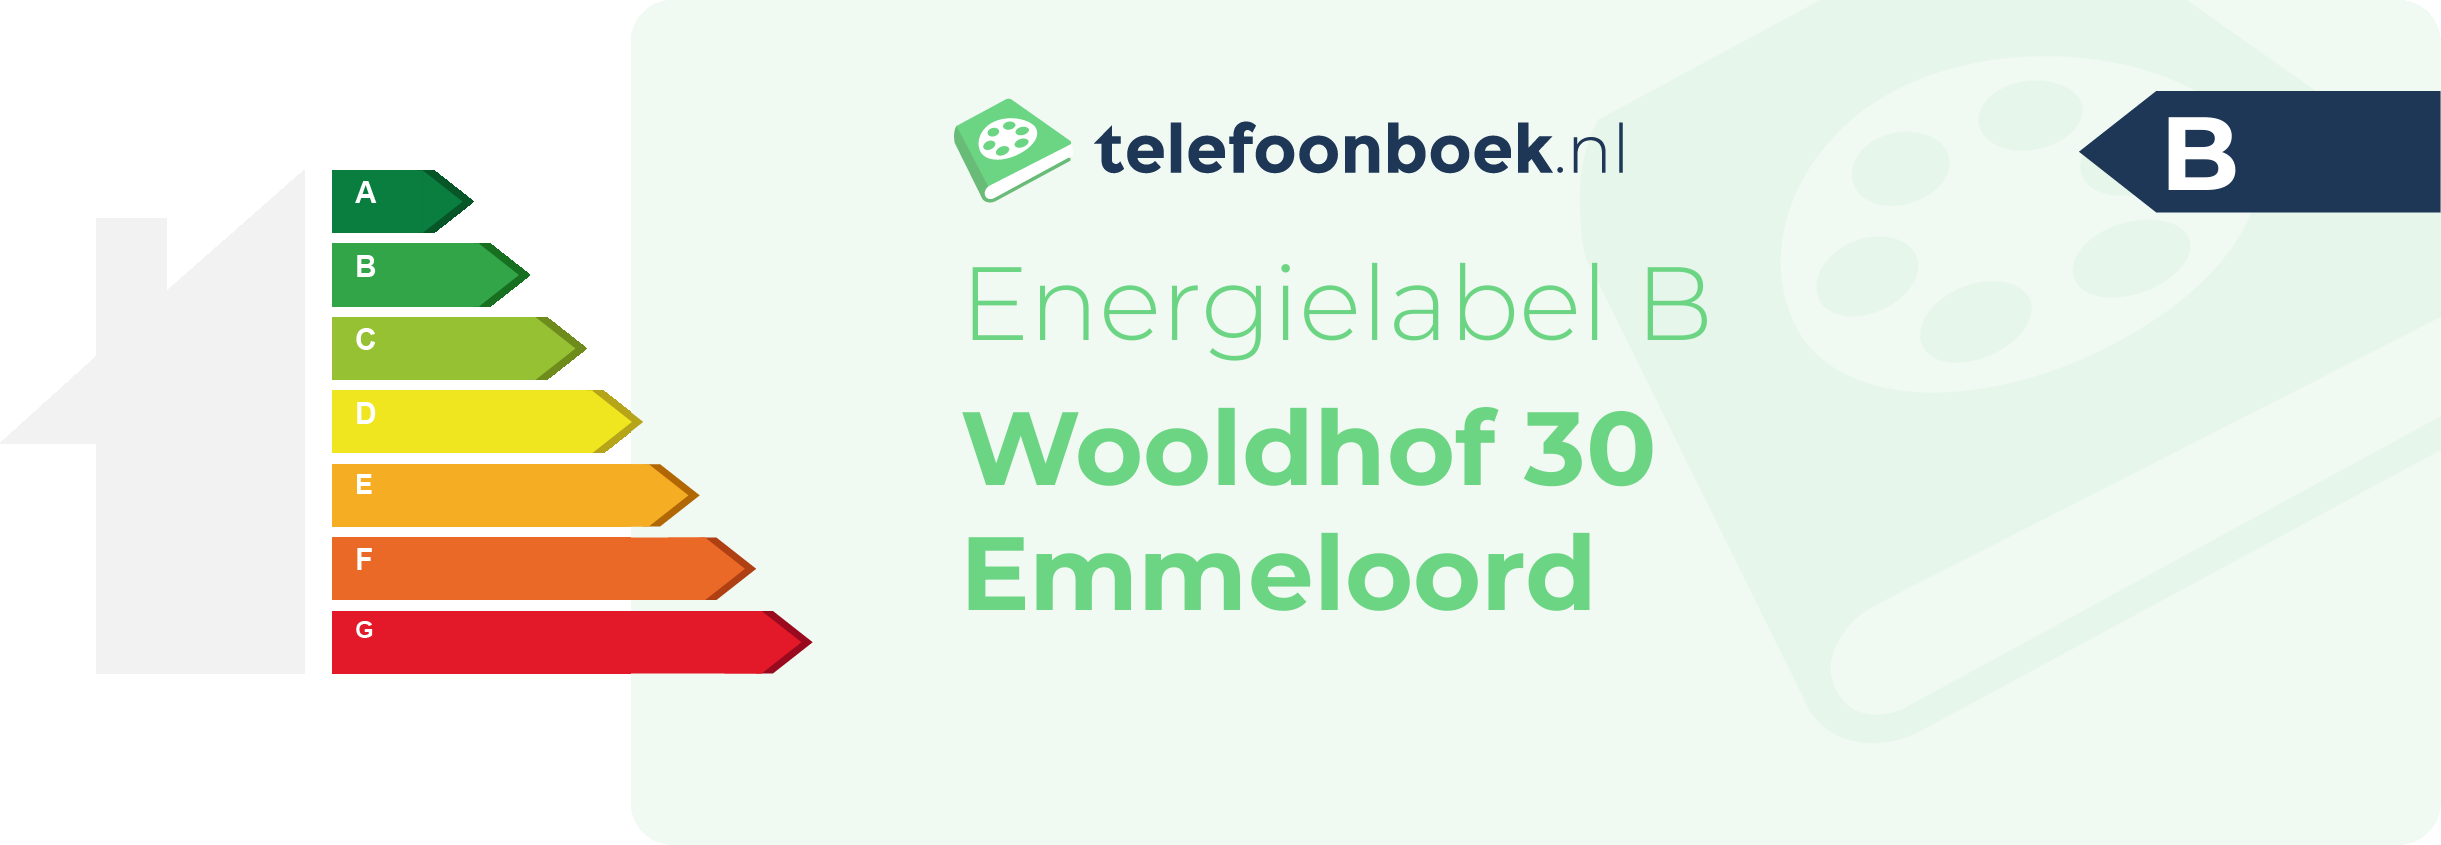 Energielabel Wooldhof 30 Emmeloord